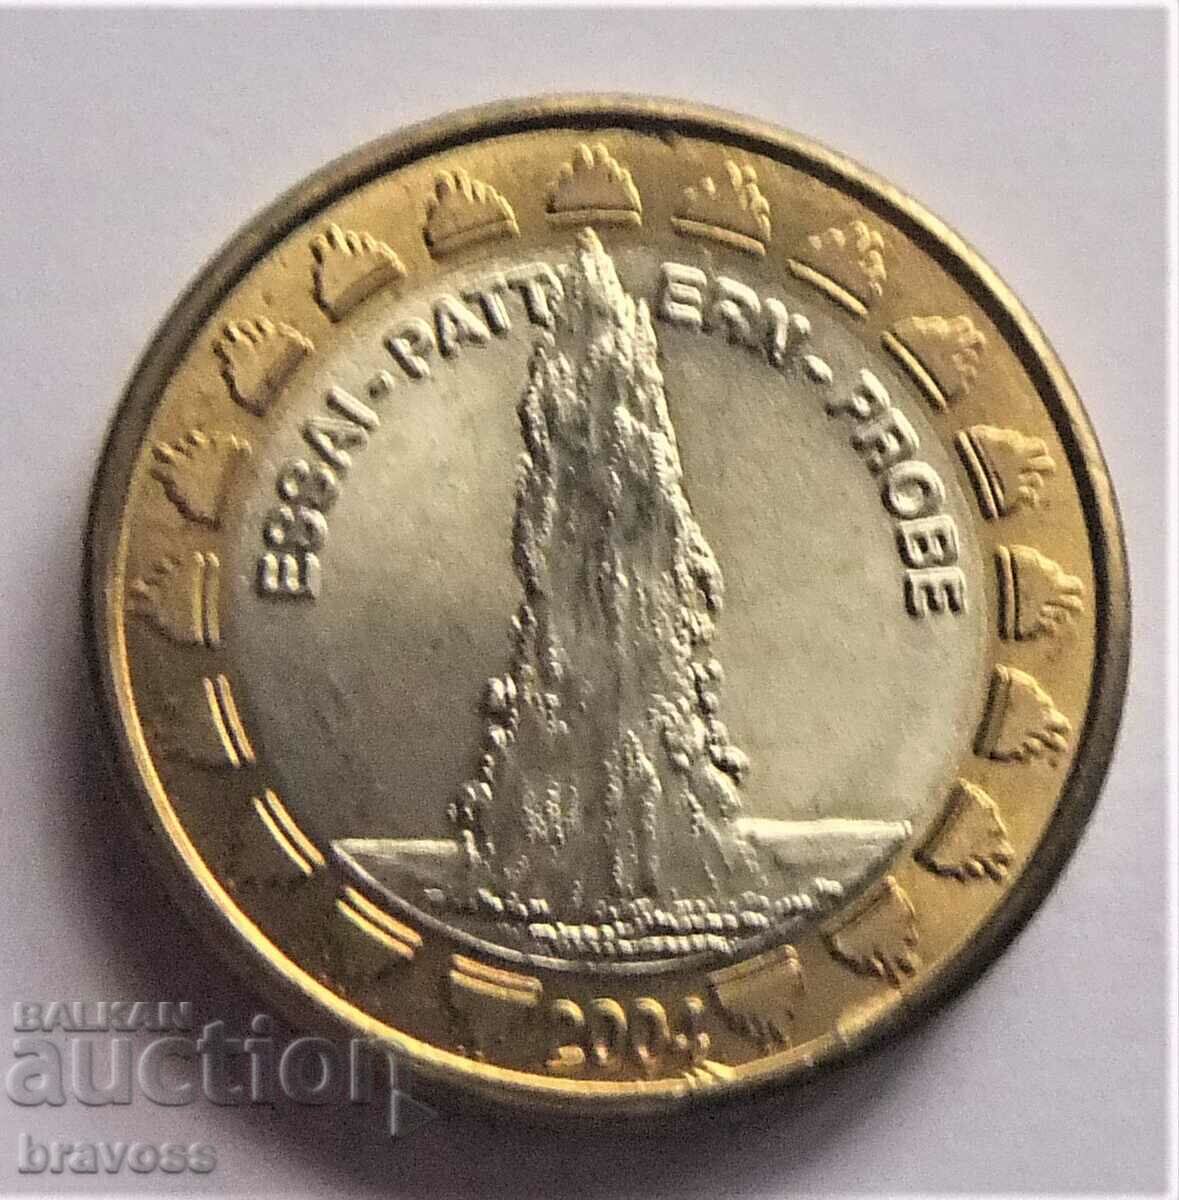 Ватикана - 1 евро 2004 - проба